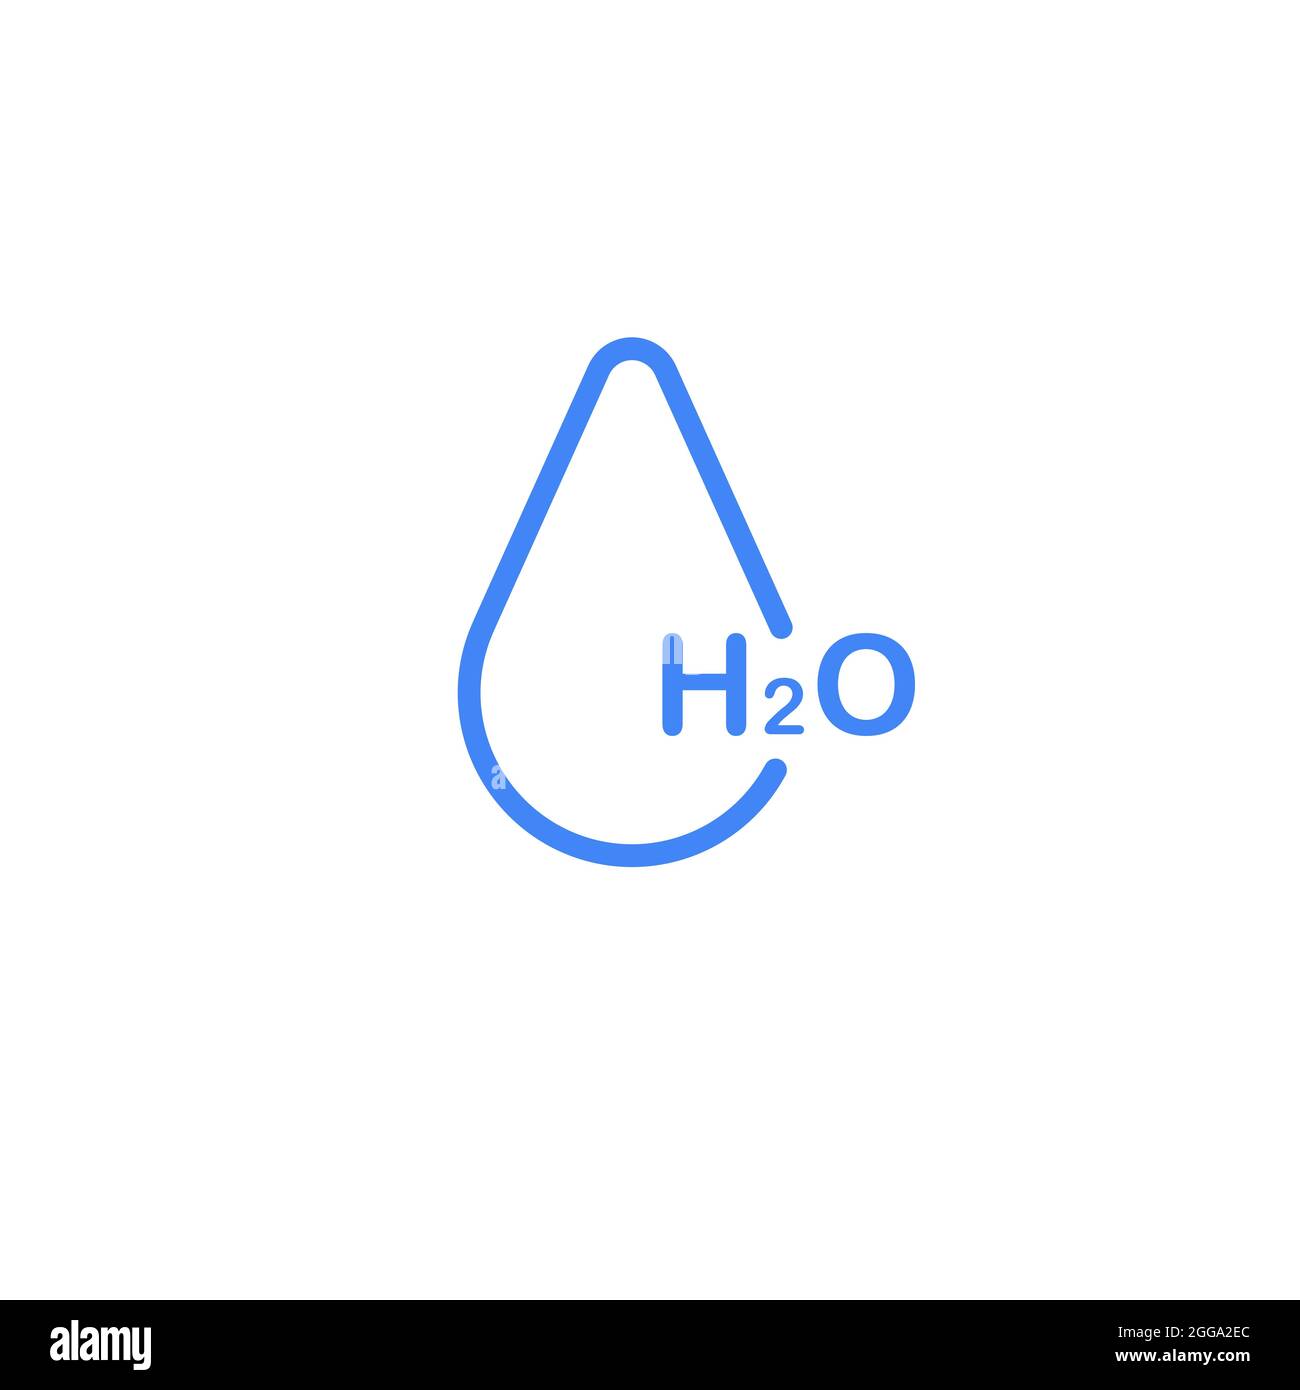 H2O-Wassersymbol. Vektorkonzept Illustration für Design. Stock Vektorgrafik isoliert auf weißem Hintergrund. Stock Vektor